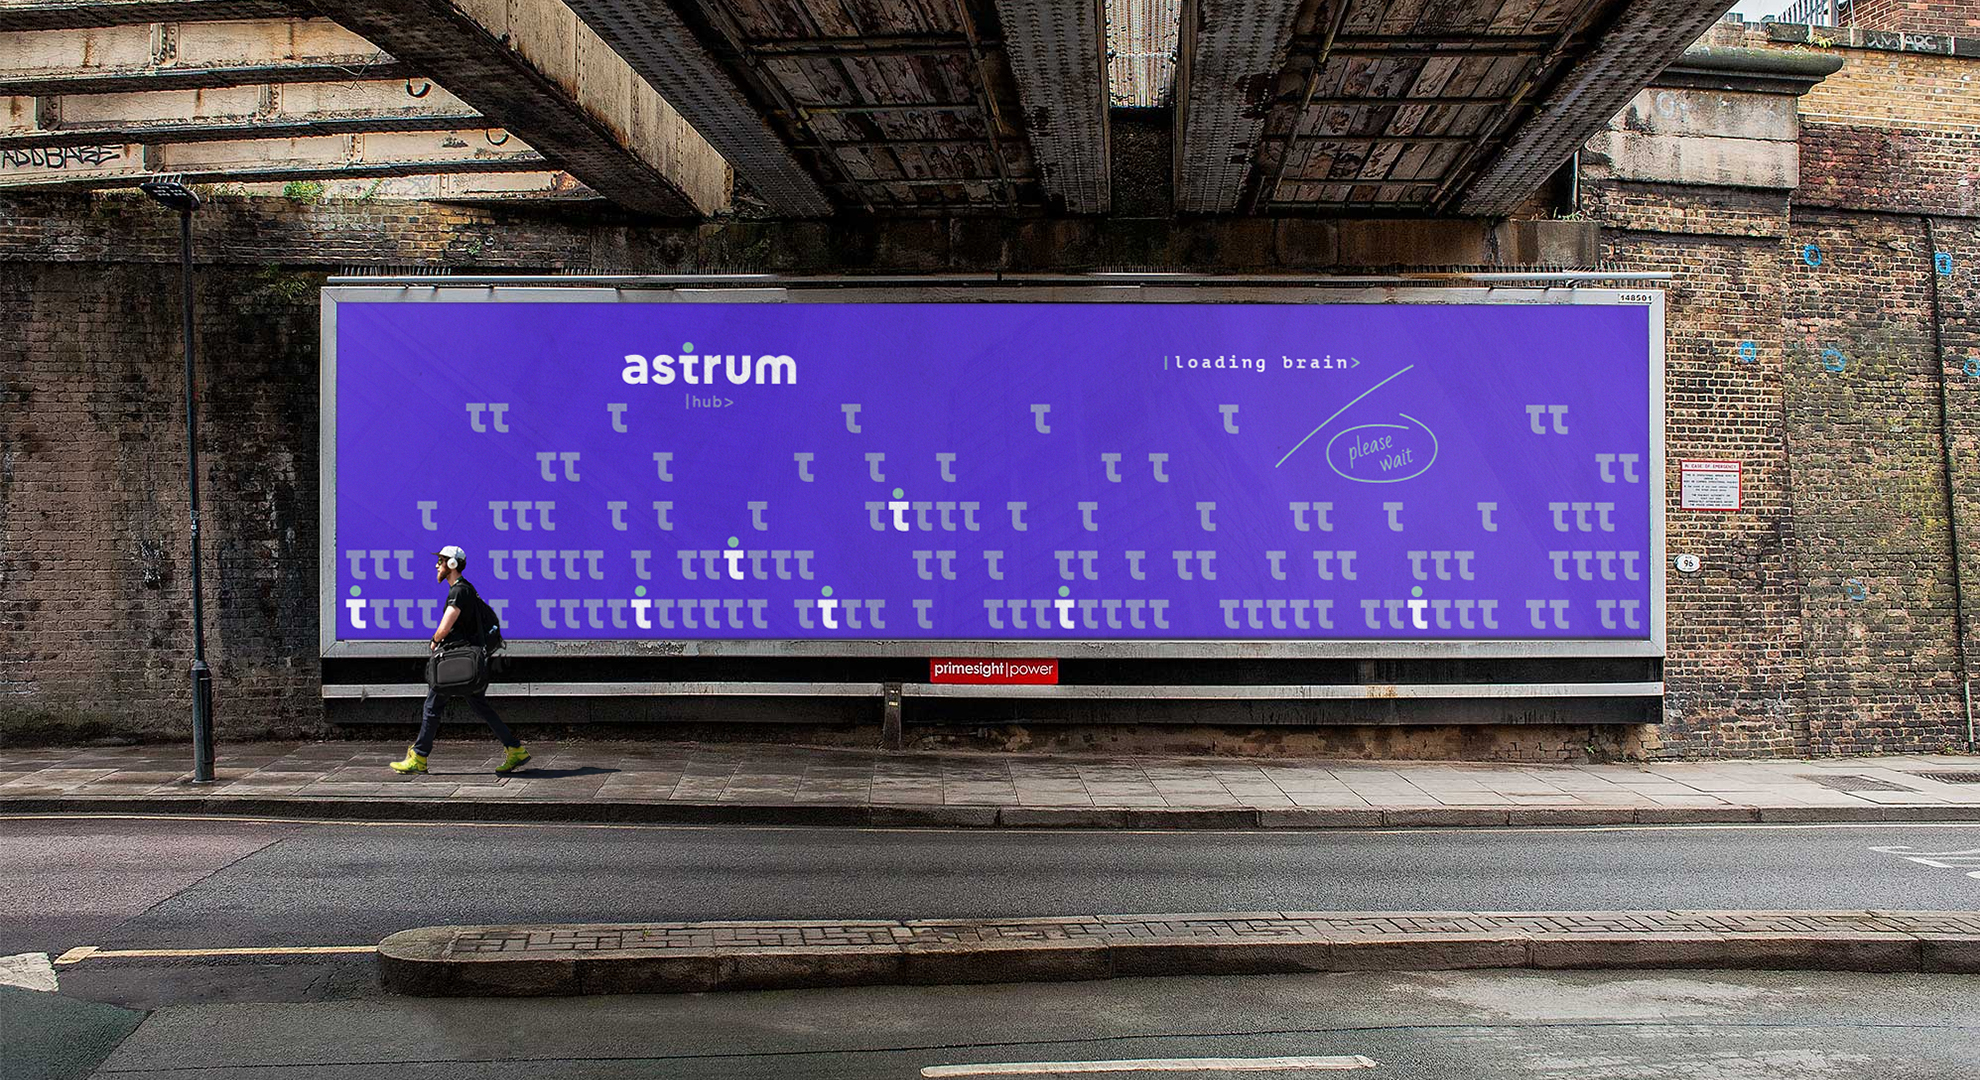 Astrum image